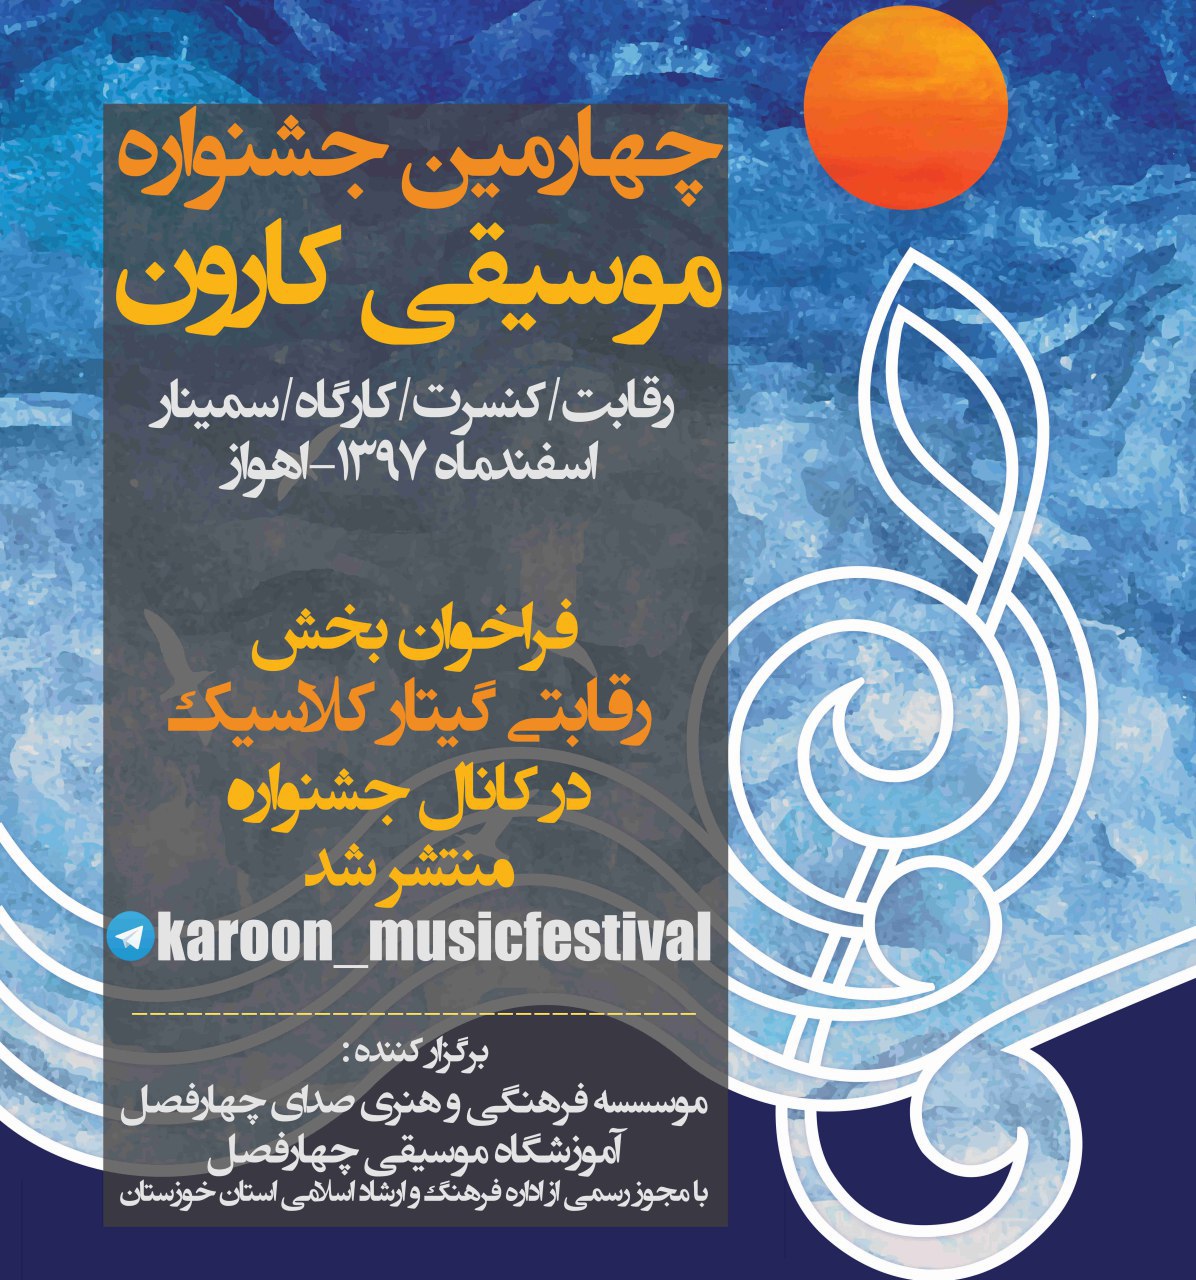 برگزاری چهارمین جشنواره موسیقی کارون در اهواز